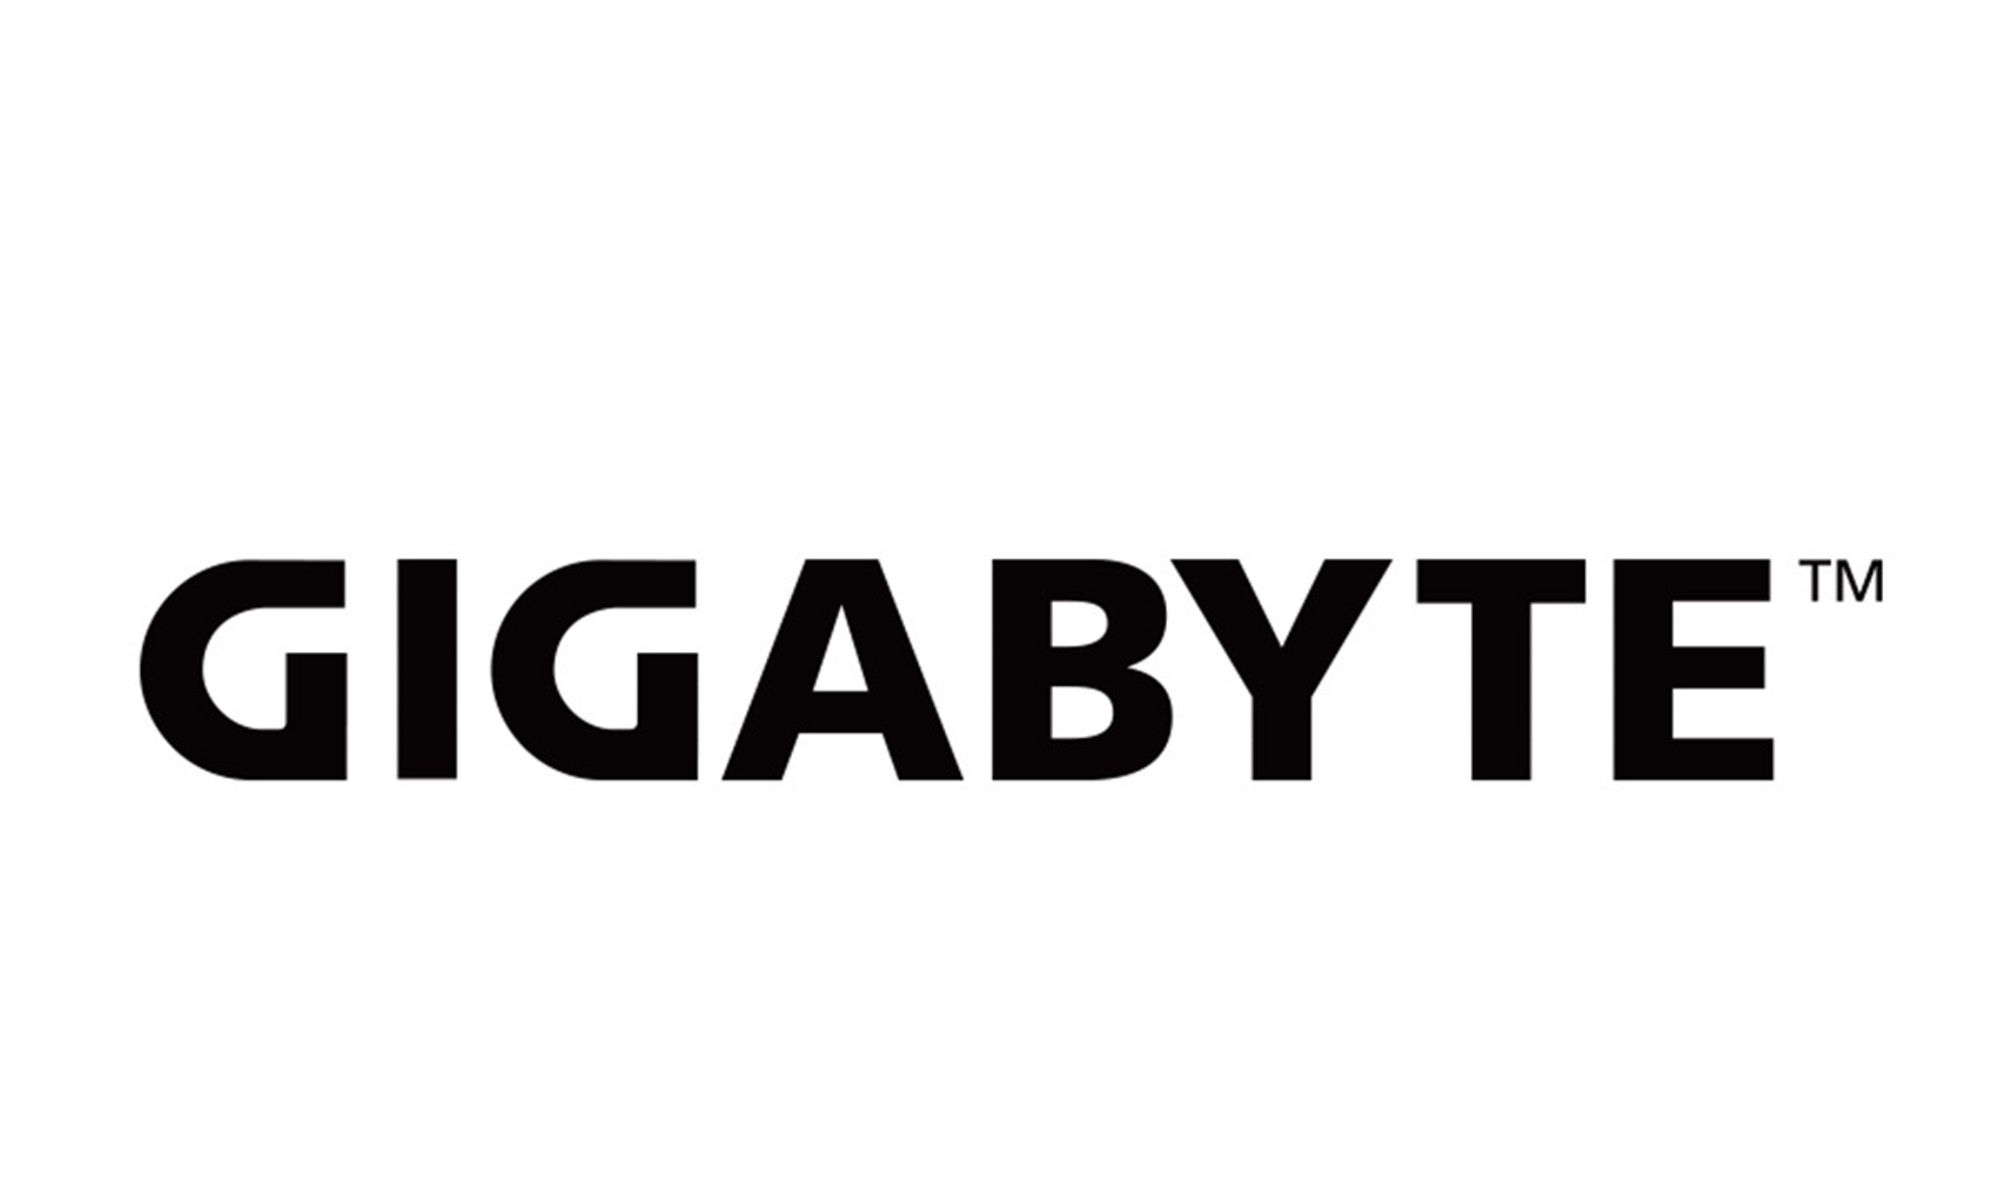 Gigabyte 標誌